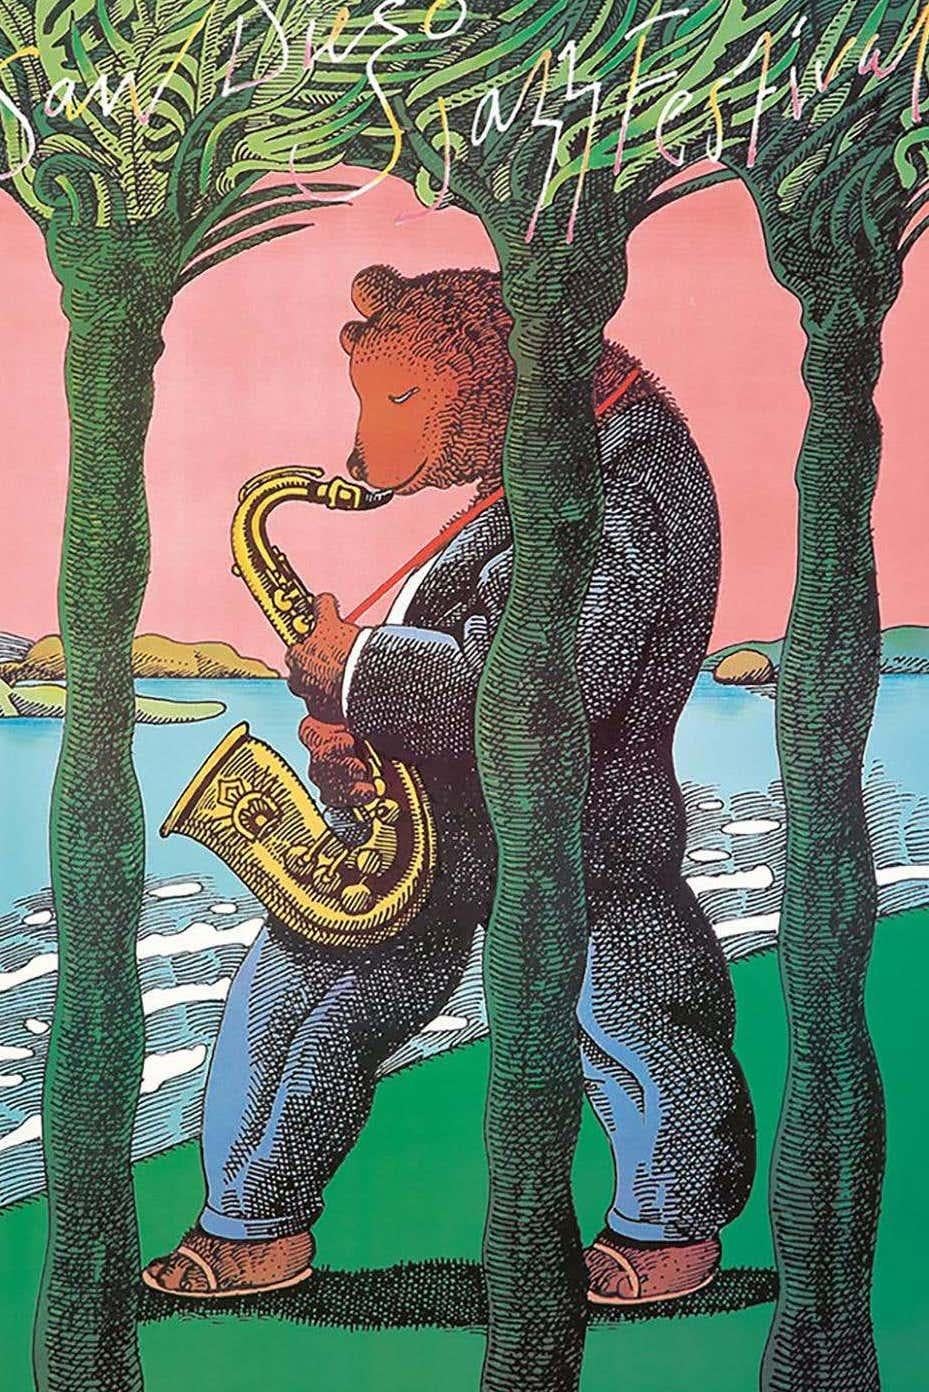 1983 jazz fest poster